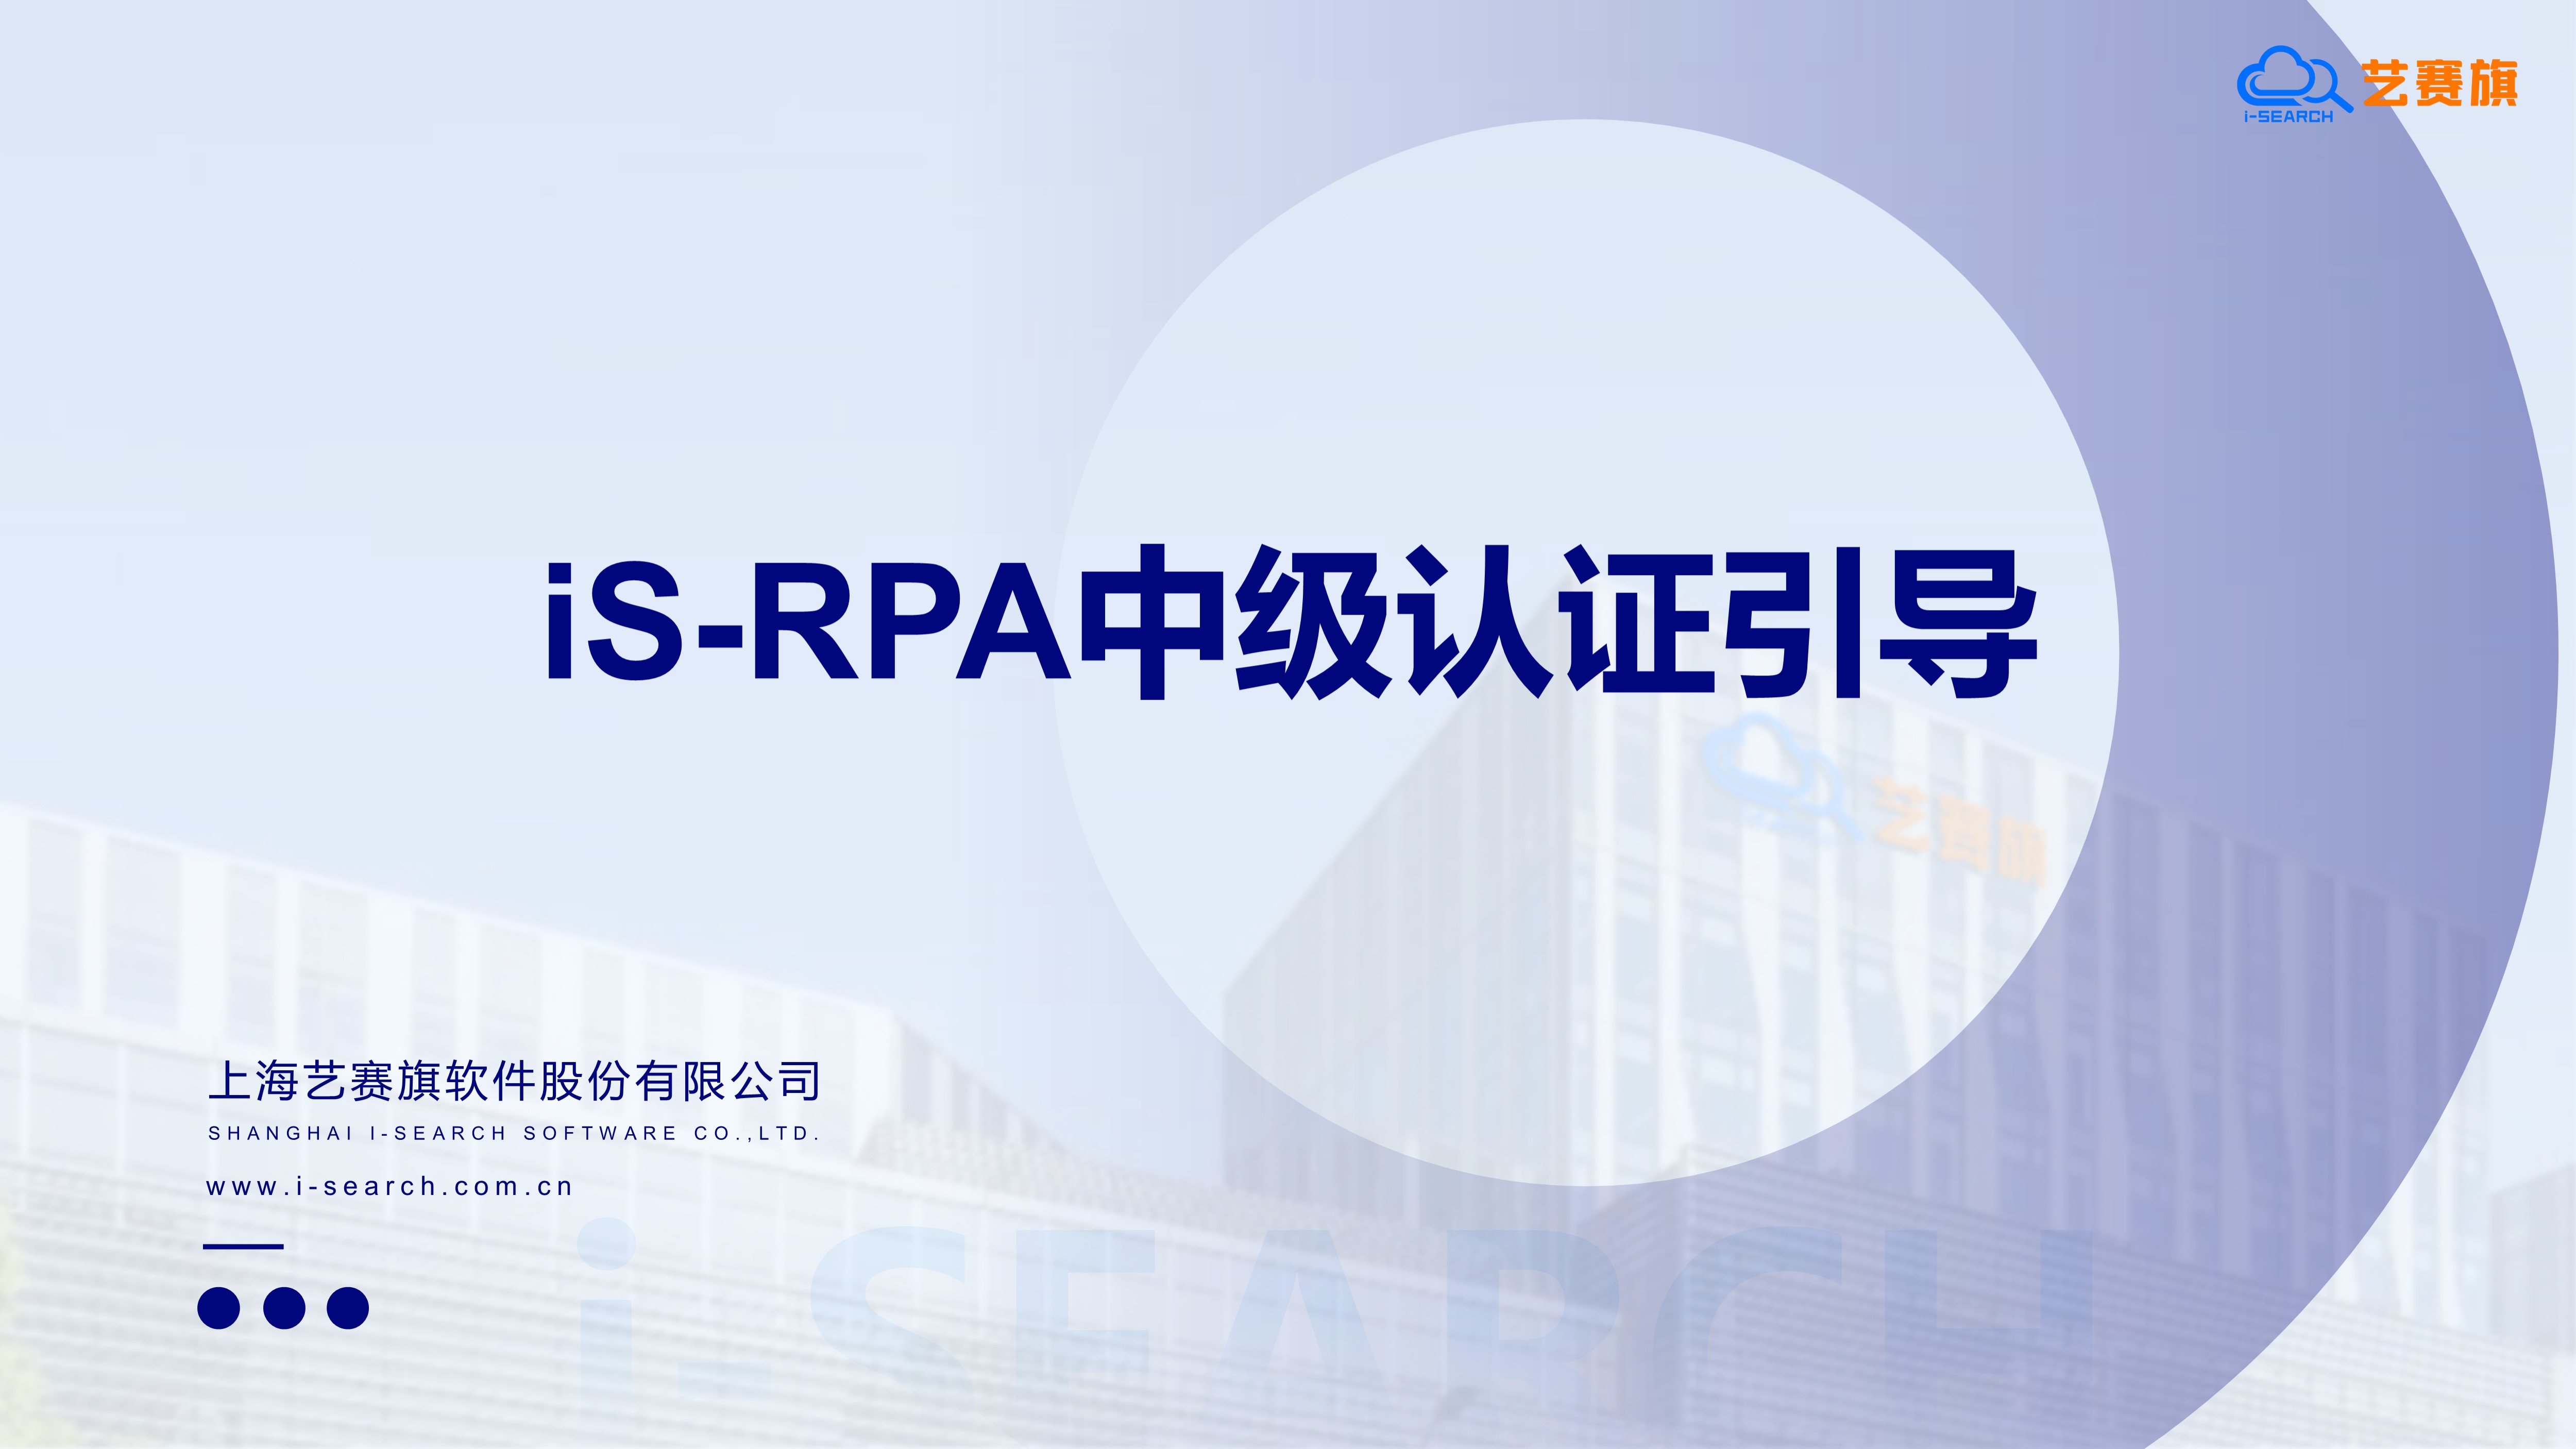 7.10-7.14 RPA 中级认证培训首期招生，全程直播，名额有限！